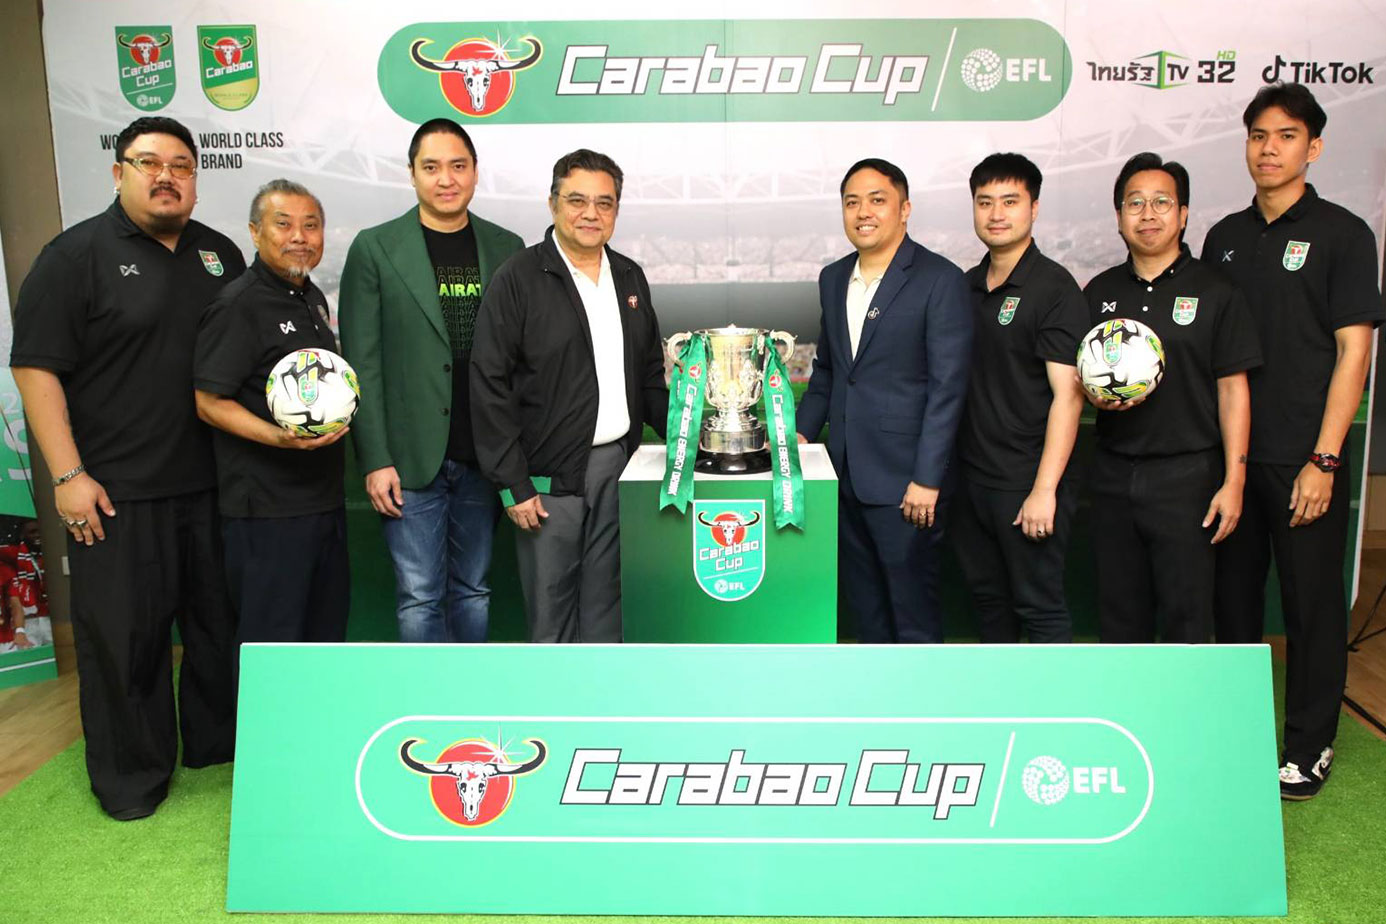 คาราบาว ประกาศต่อสัญญา  Carabao Cup อีก 3 ปี  สยายปีกเครื่องดื่มระดับโลก  พร้อมผนึกกำลังกับไทยรัฐทีวี และ TikTok ถ่ายทอดสด Carabao Cup 2023/24 ให้คนไทยได้ชมฟรี